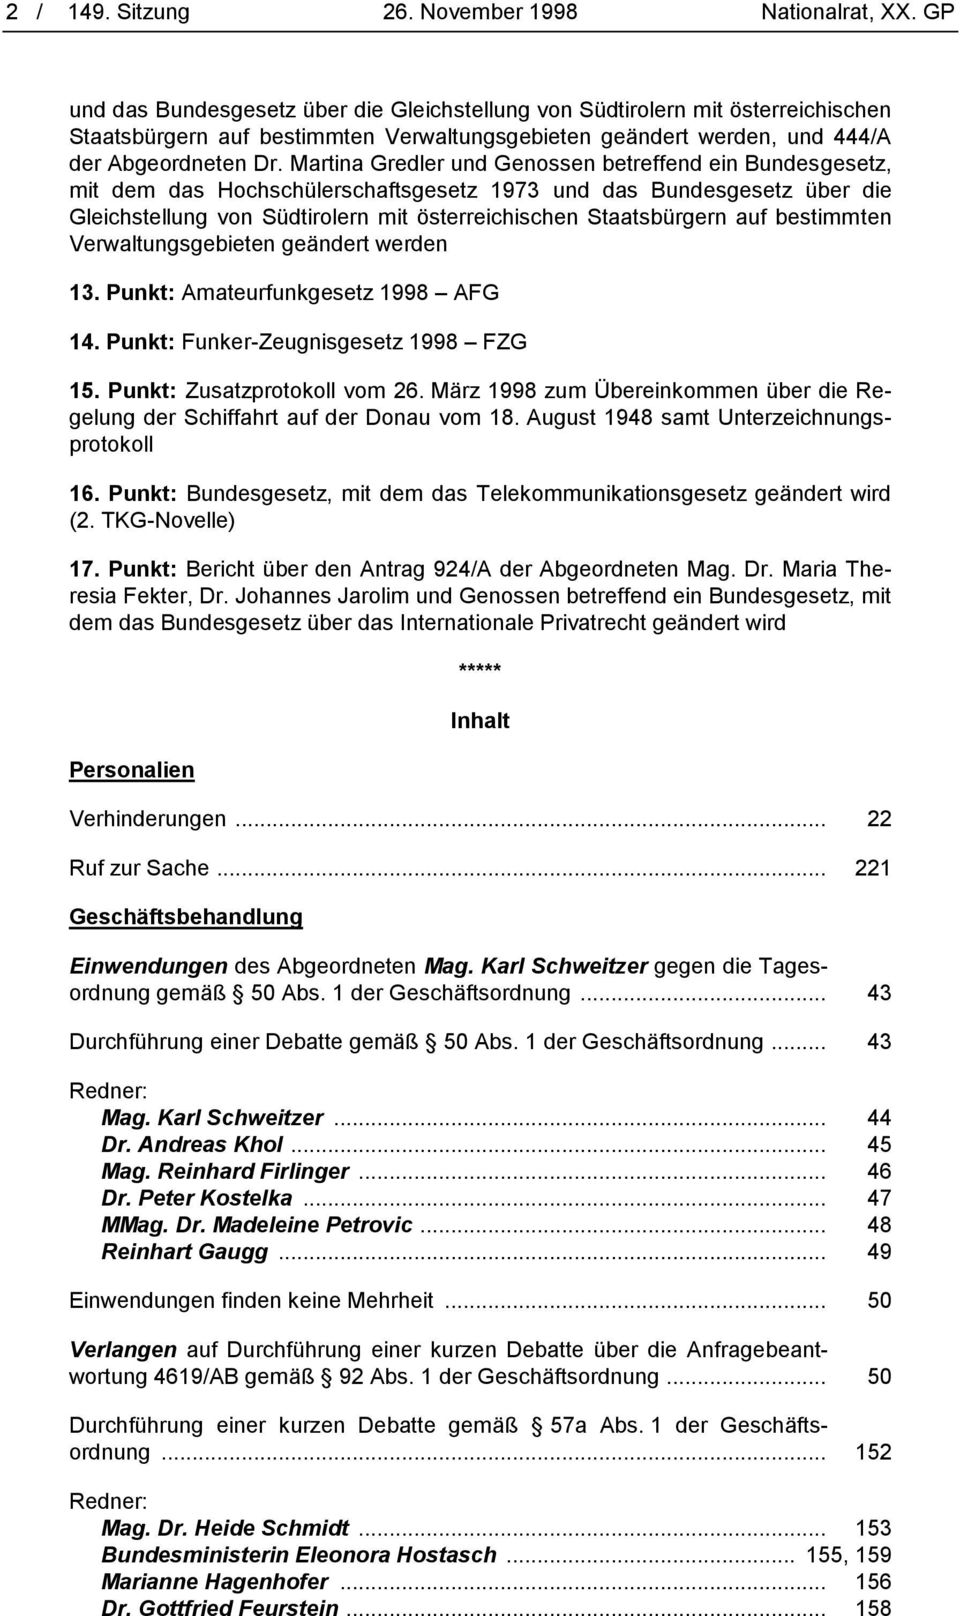 Martina Gredler und Genossen betreffend ein Bundesgesetz, mit dem das Hochschülerschaftsgesetz 1973 und das Bundesgesetz über die Gleichstellung von Südtirolern mit österreichischen Staatsbürgern auf